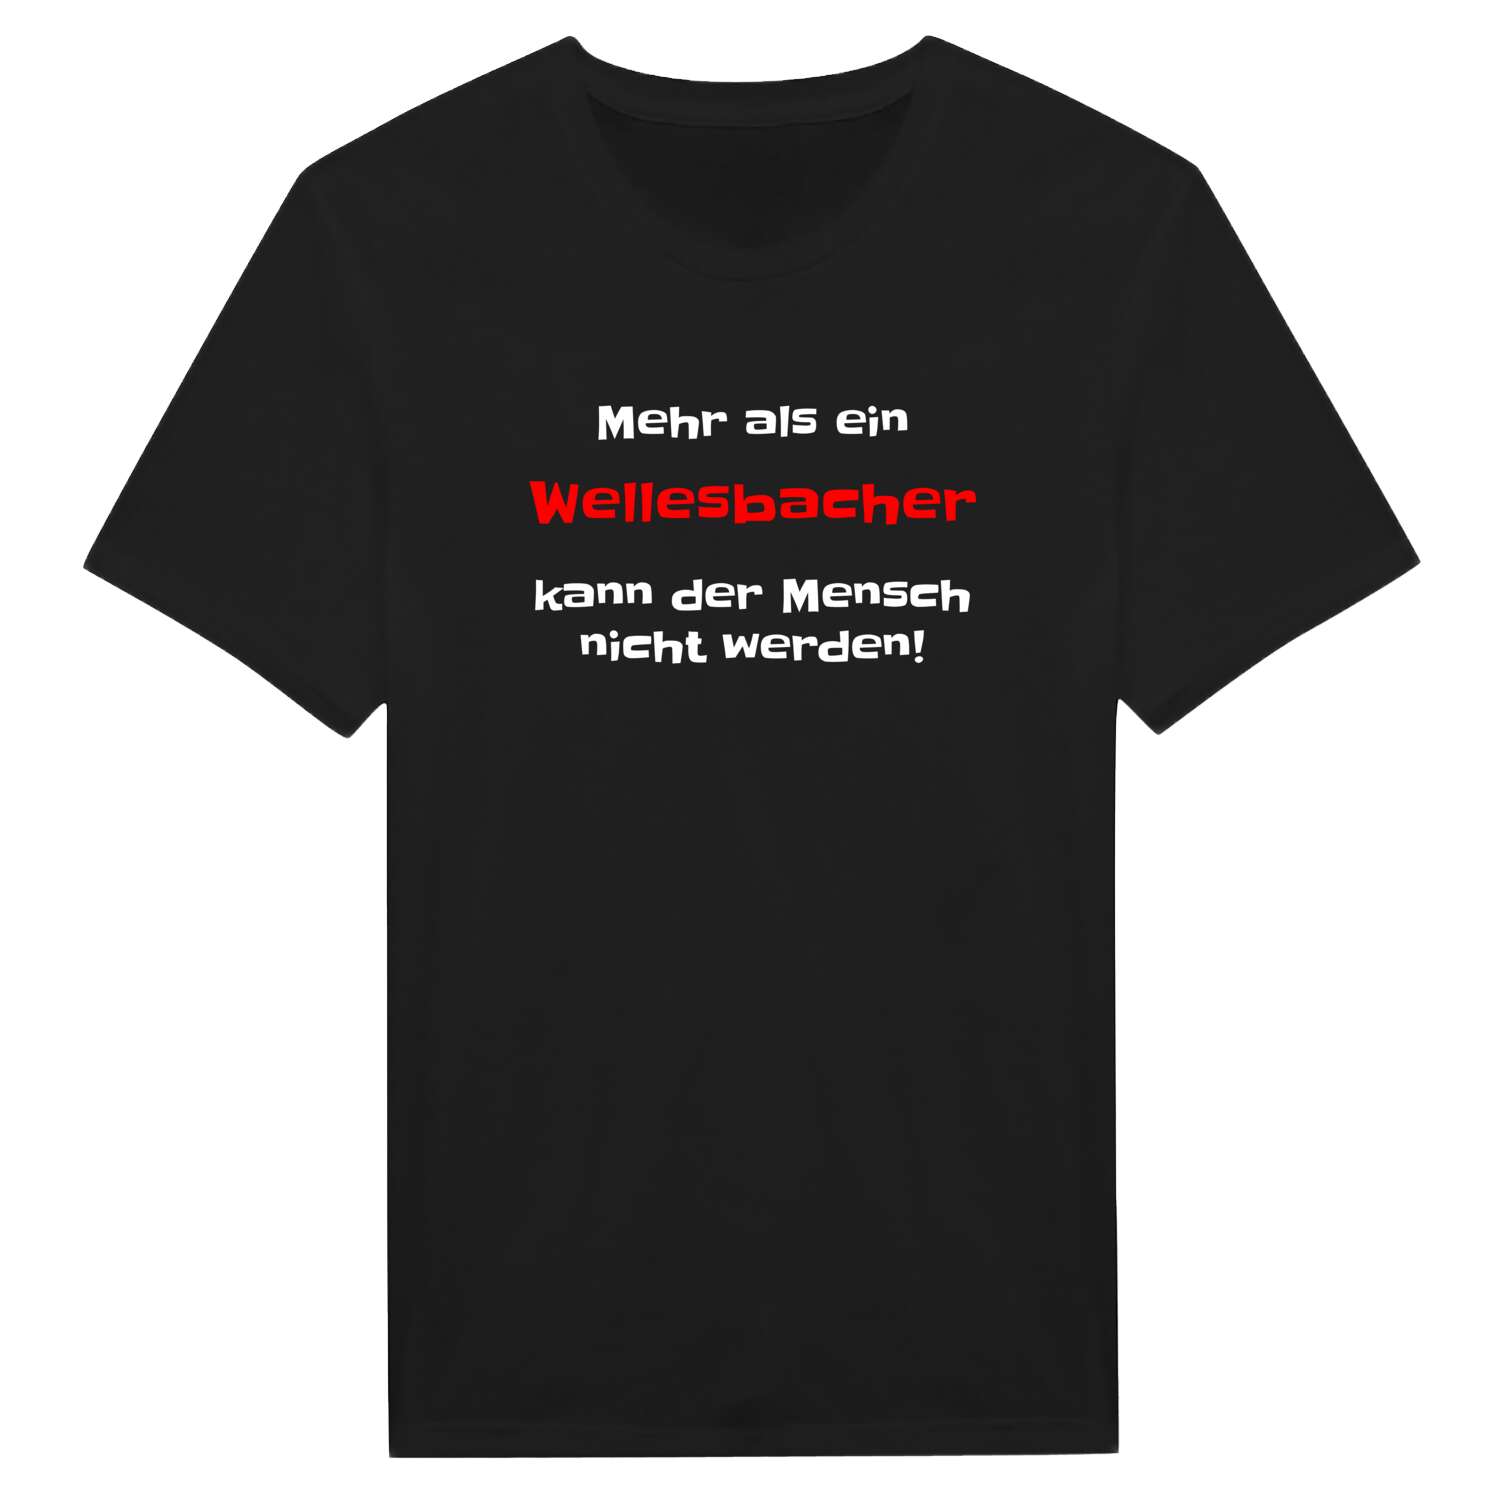 Wellesbach T-Shirt »Mehr als ein«